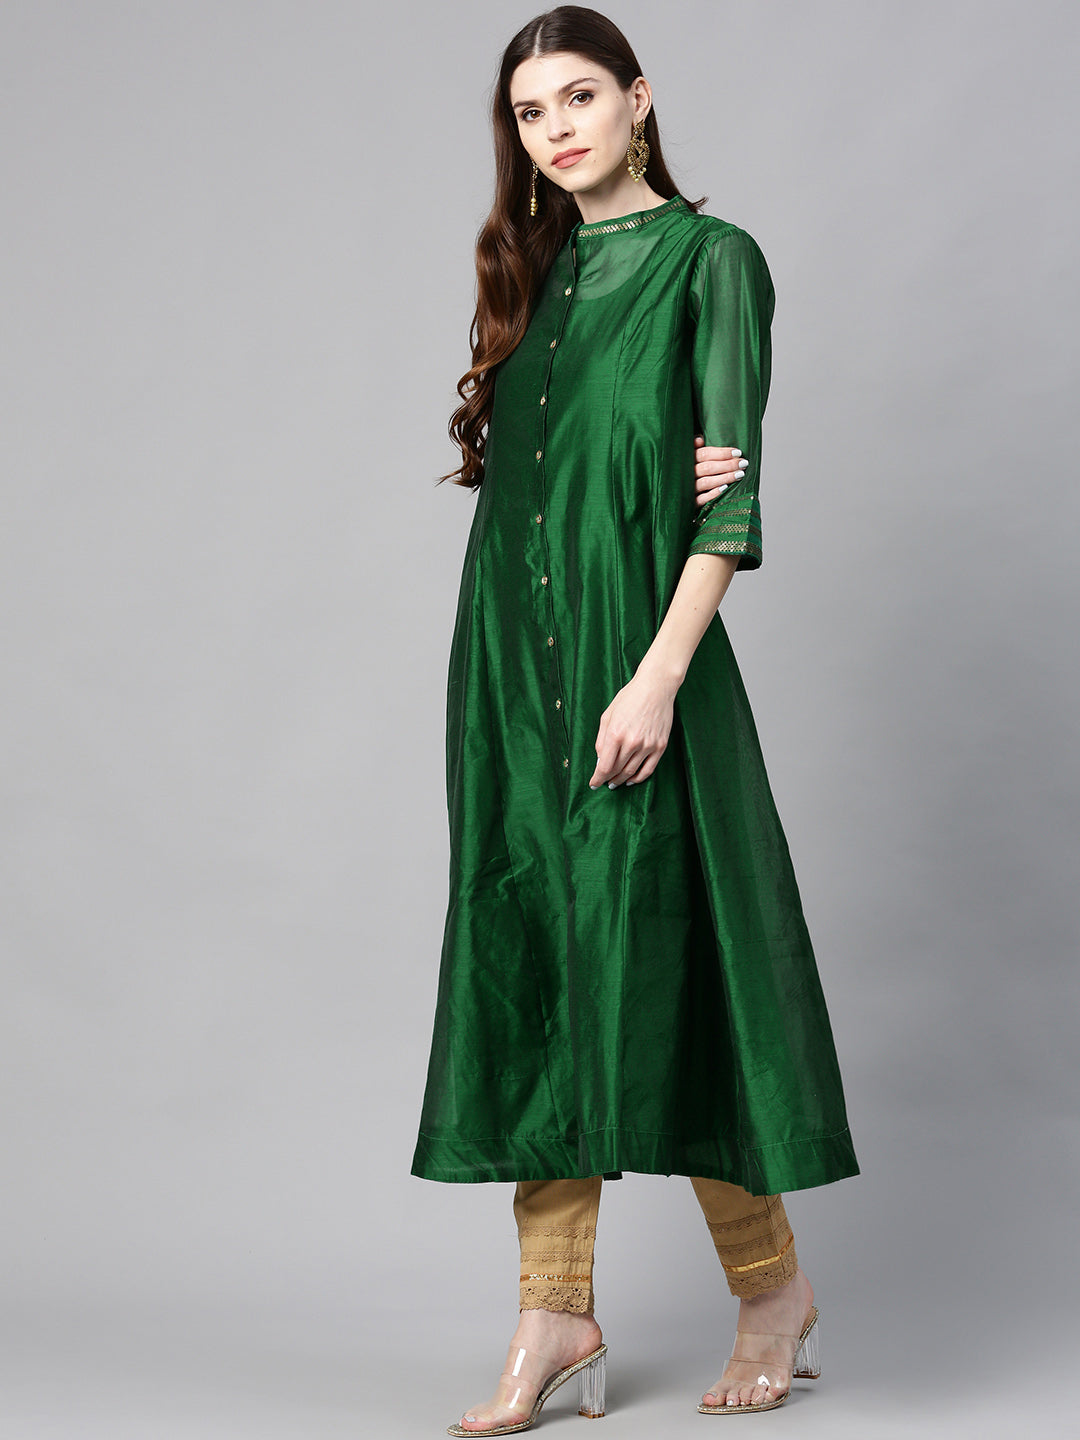 Juniper Jade Green Solid Chanderi Kalidar A-line Women Kurta With Buttons